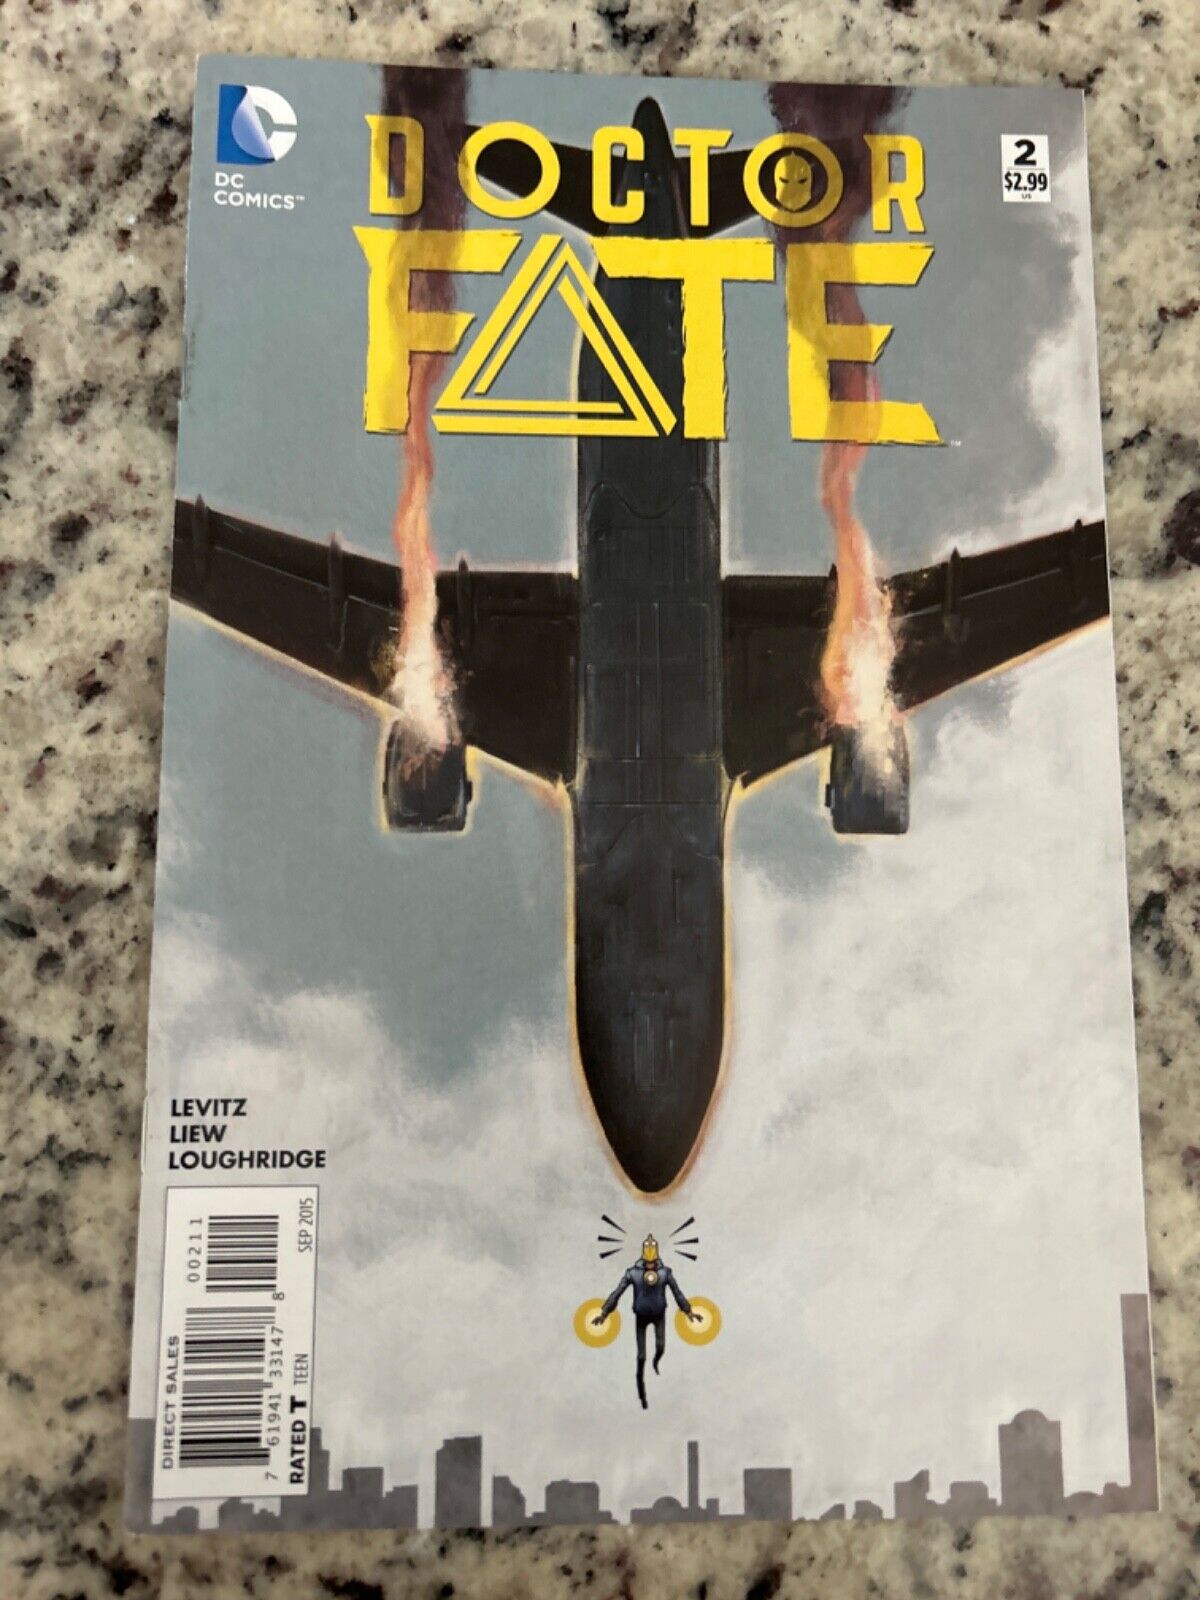 Dr. Fate #2 Vol. 1 (DC, 2015) VF